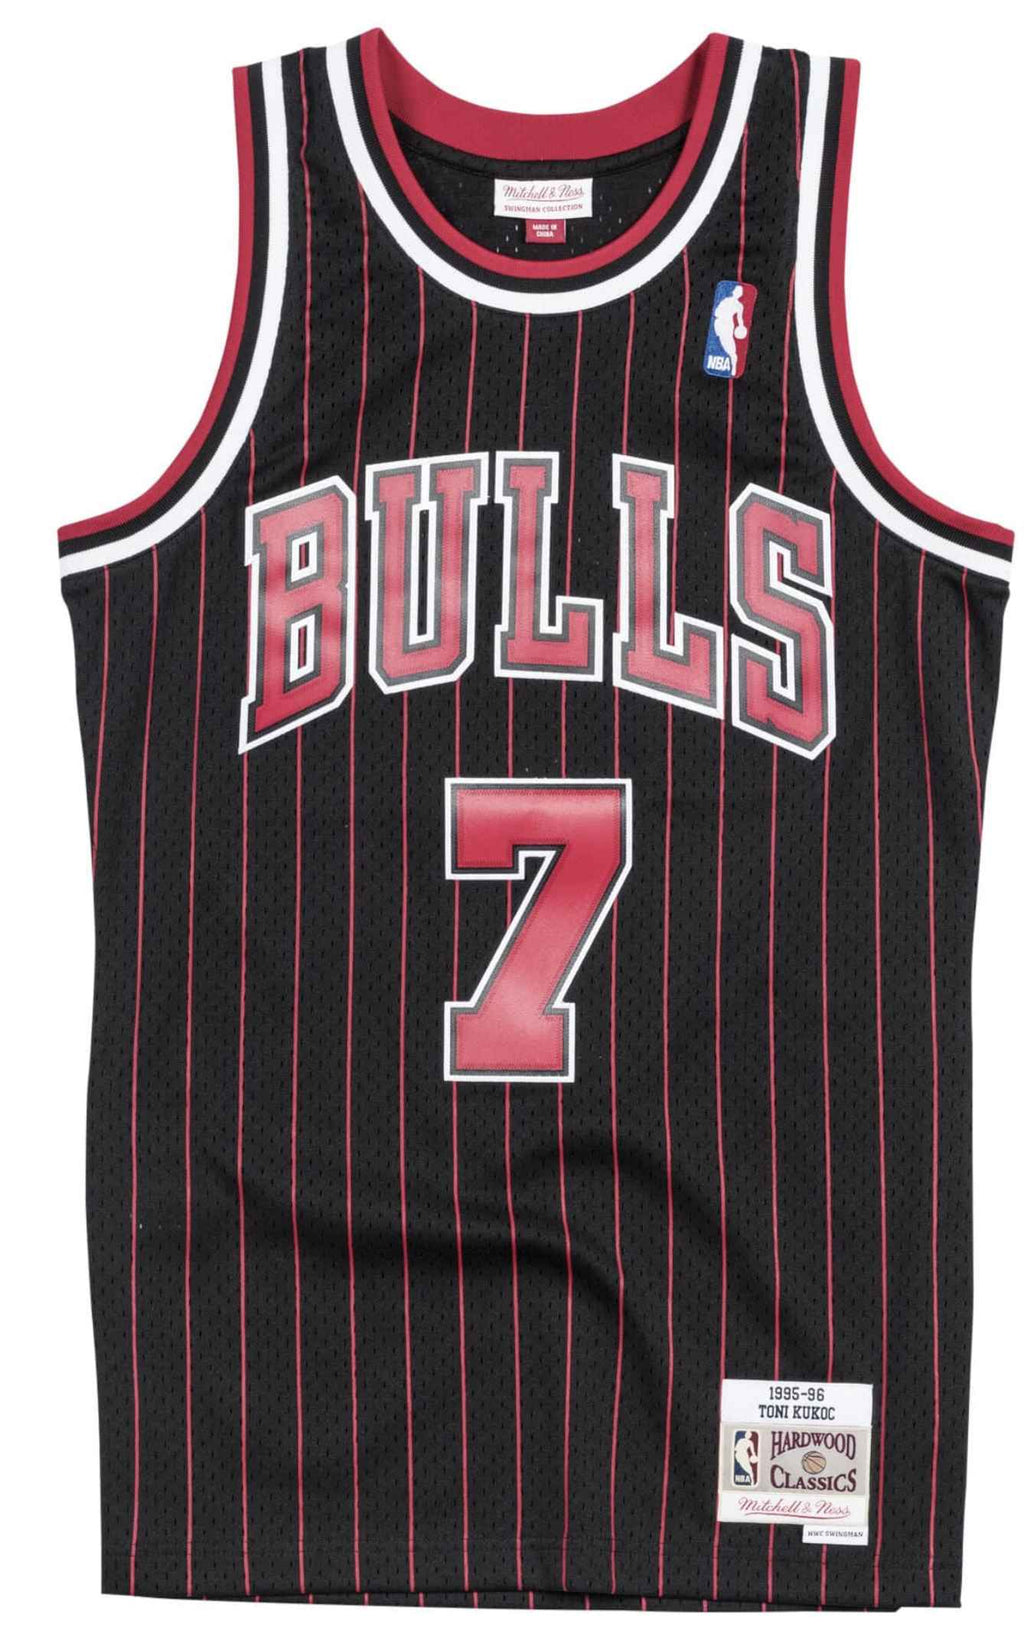  Mitchell E Ness Mitchell & Ness Canotta Nba Swingman Jersey Chicago Bulls 95-96 Toni Kukoc Black Stripes Nero Uomo - 1